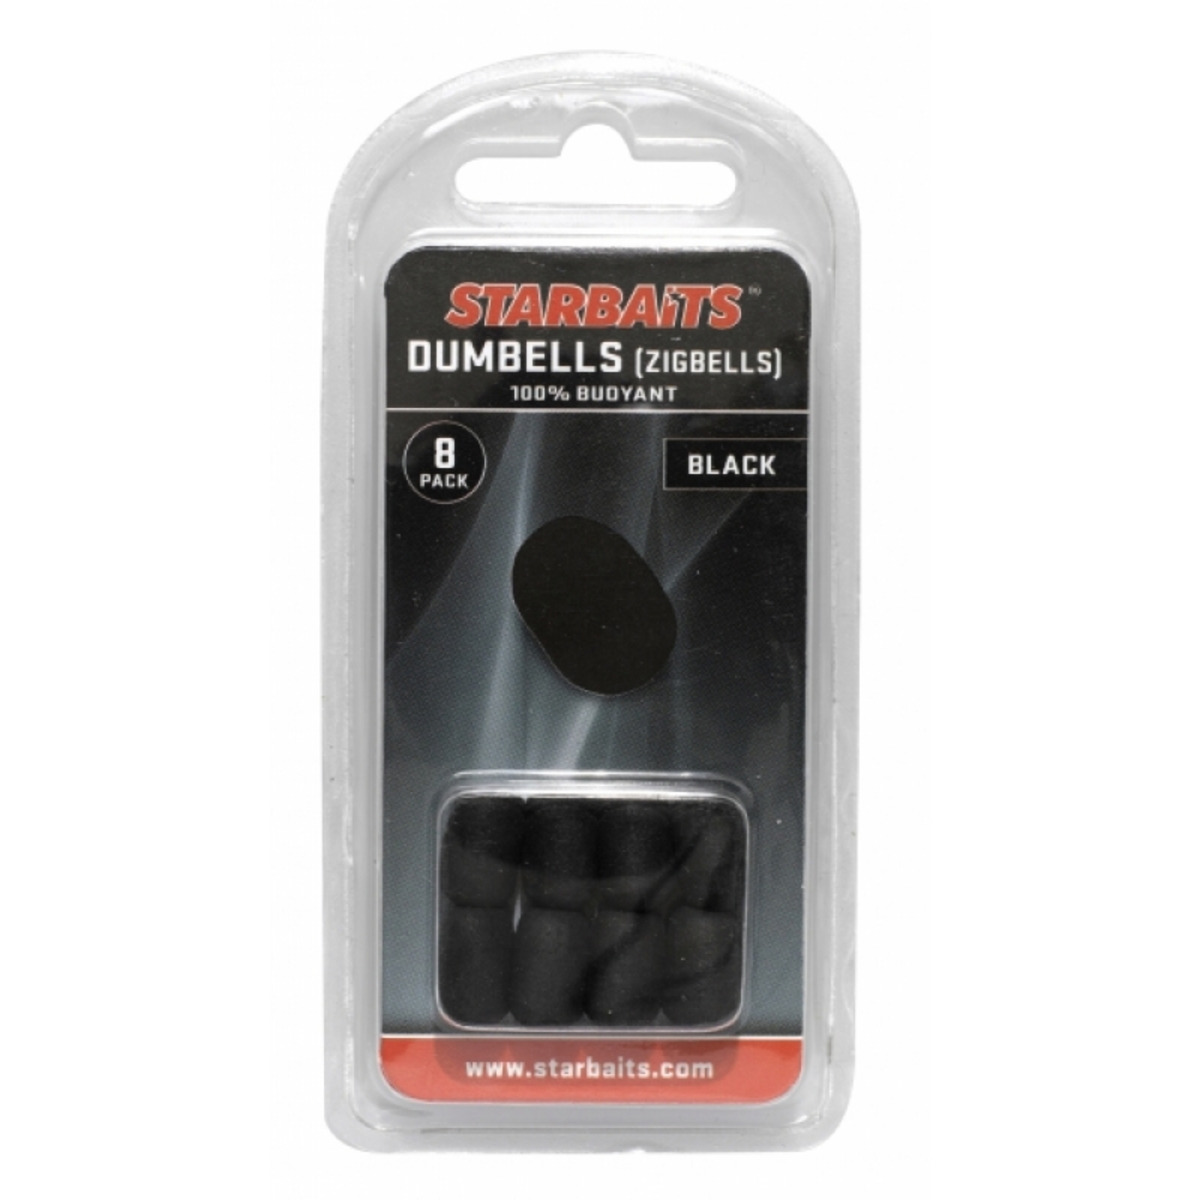 Starbaits Dumbells - BLACK